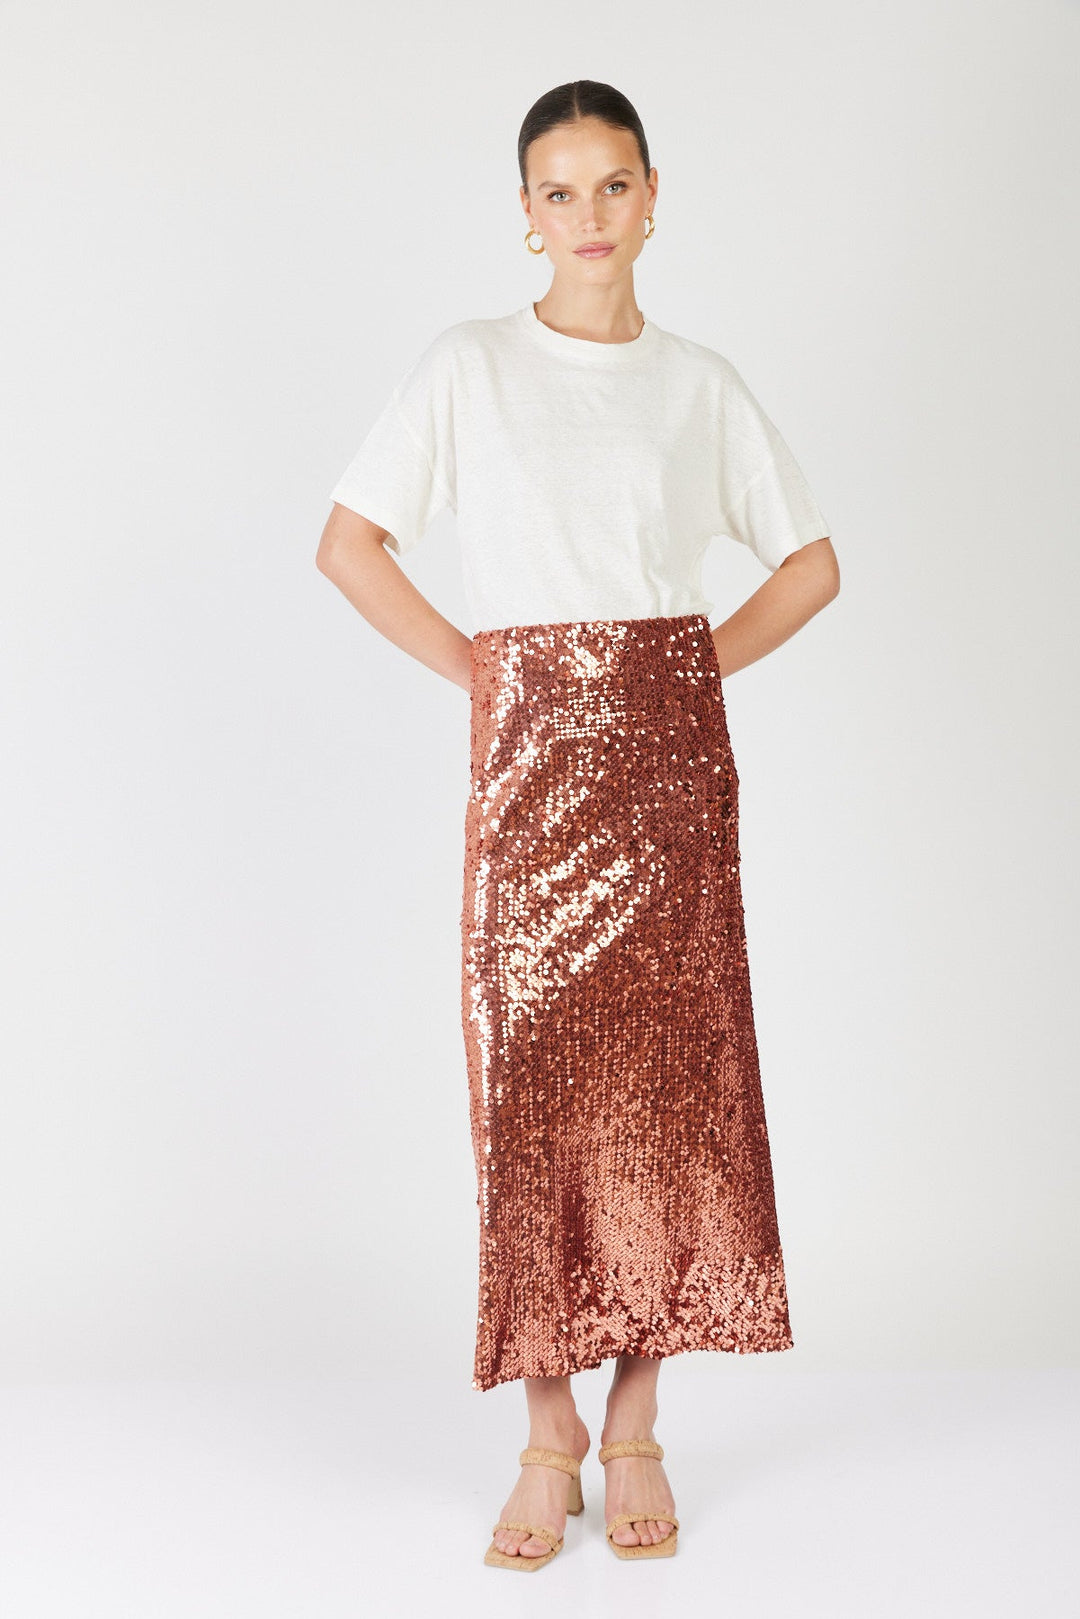 חצאית מידי פאייטים Sparkle בצבע ברונזה - Dana Sidi